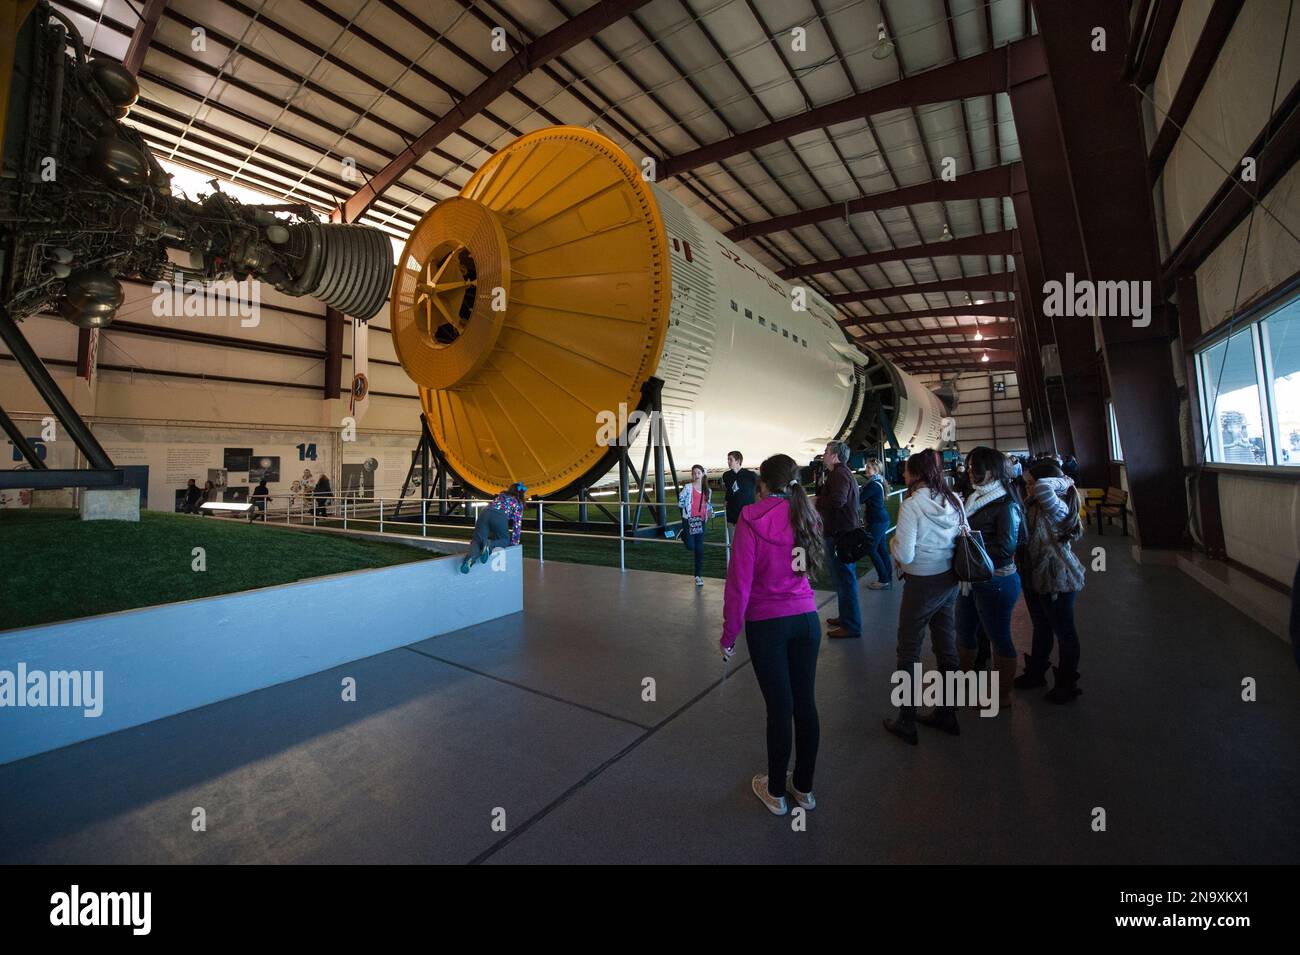 Saturn V Rocket, die größte jemals in den Weltraum eingesetzte Saturn V Rocket, im Johnson Space Center in Houston, Texas, USA Stockfoto